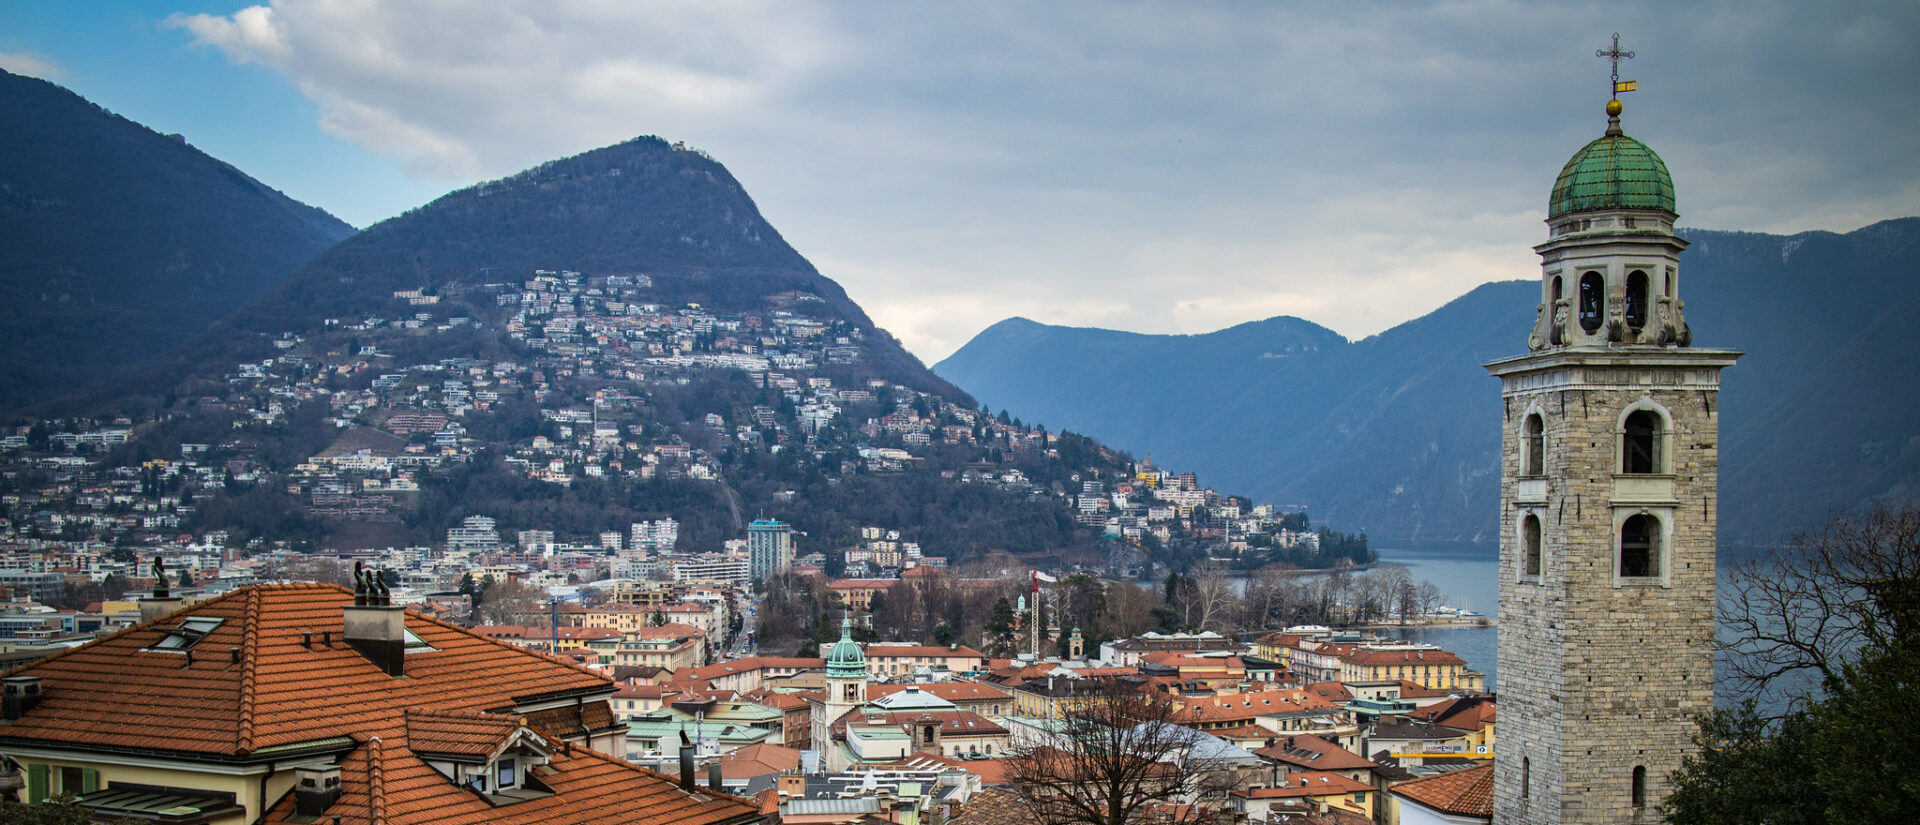 L'ancien vicaire général de Lugano a été mis hors de cause | © Max Stolbinsky/Flickr/CC BY 2.0